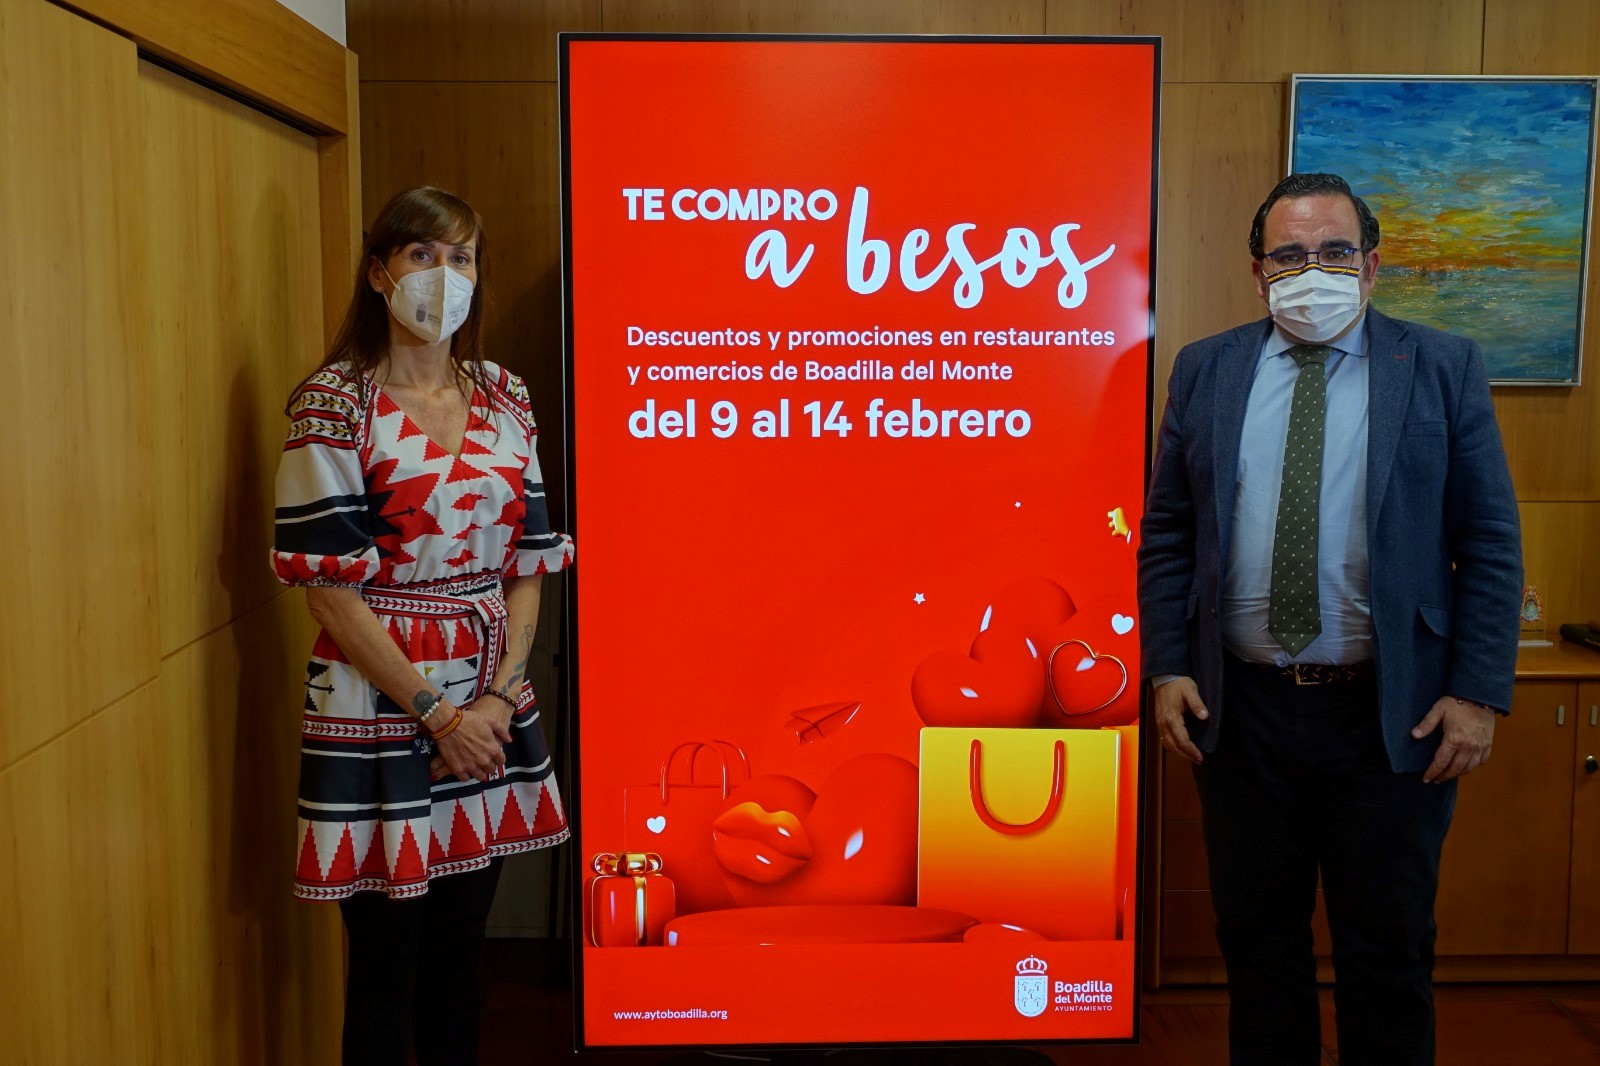 Boadilla lanza la campaña ‘Te compro a besos’ con promociones por San Valentín - La Viña